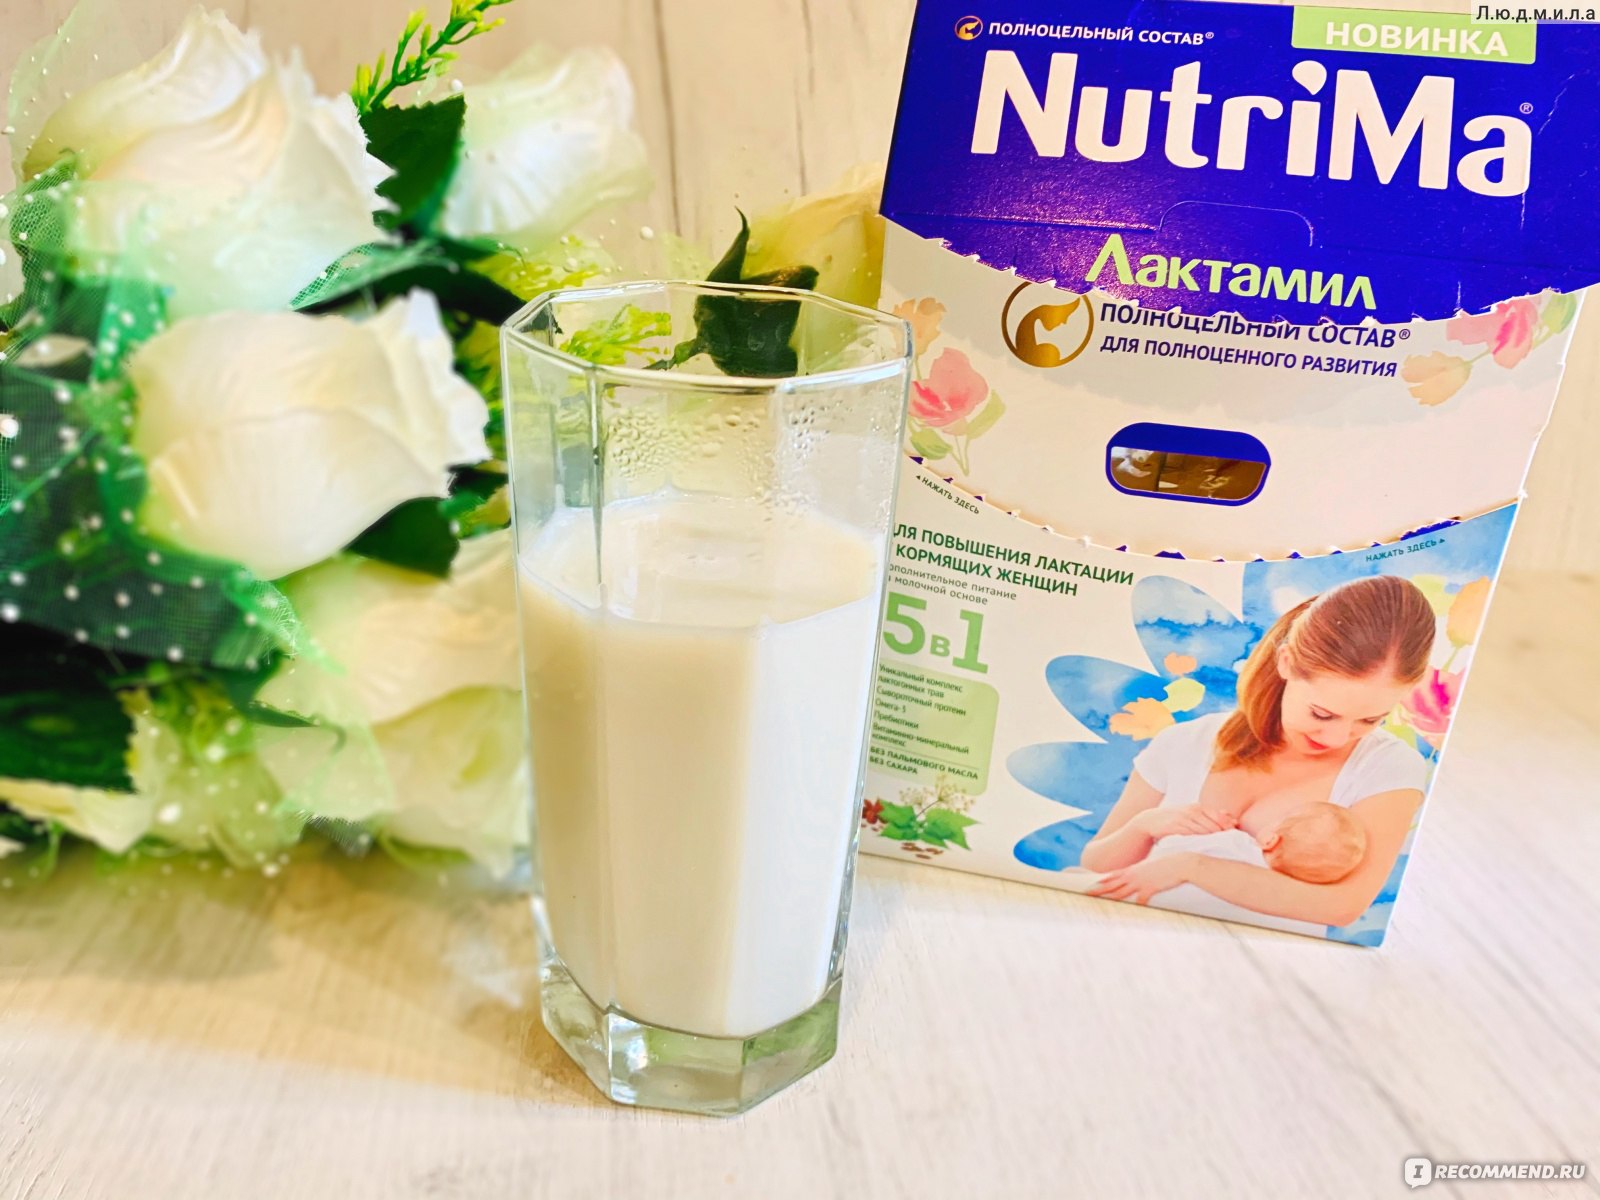 Выбираем питание для ребёнка: рейтинг лучших молочных смесей для детей в 2020 году